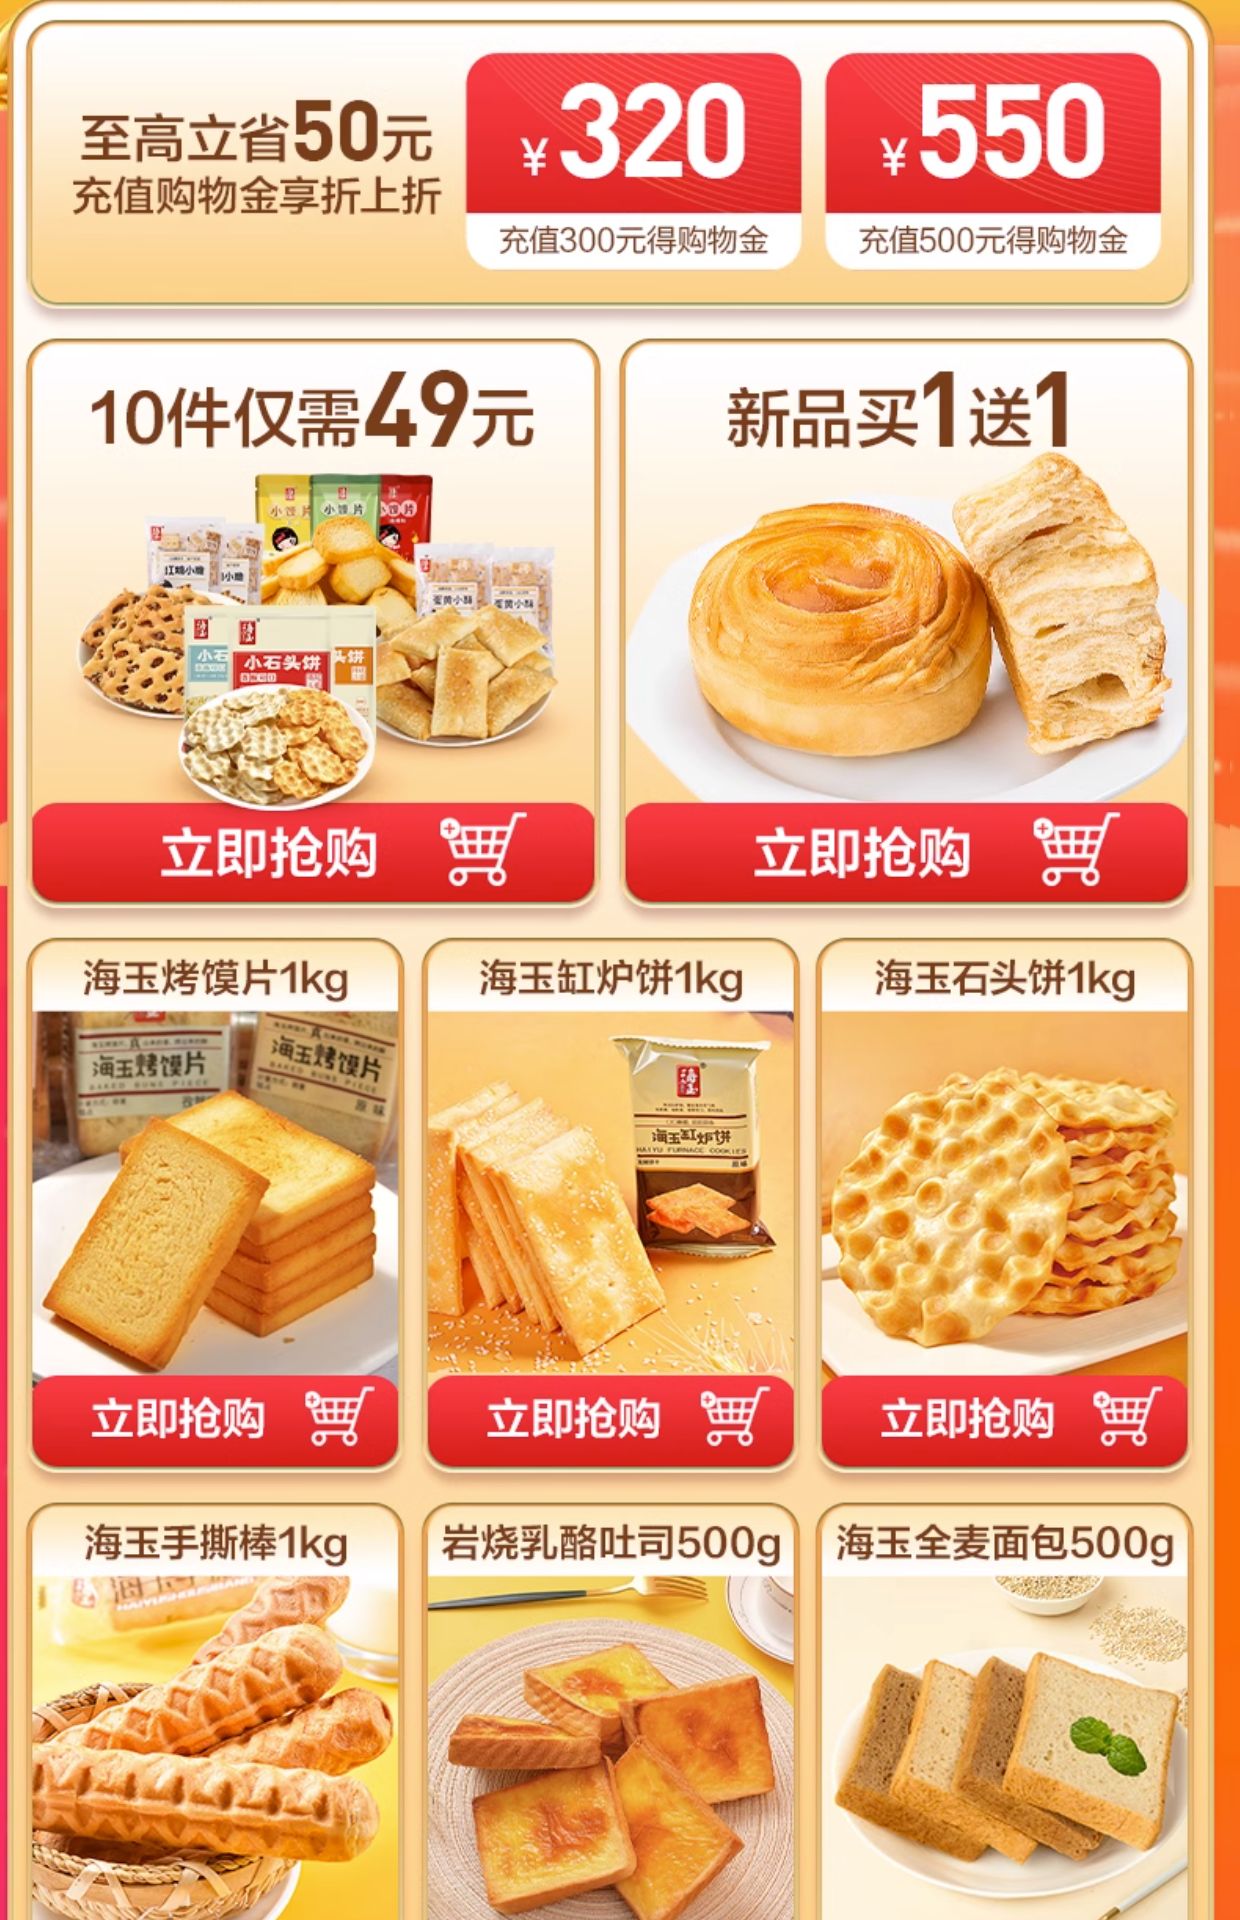 海玉小石头饼石子馍石子烤馍山西特产零食小吃休闲传统饼干108g